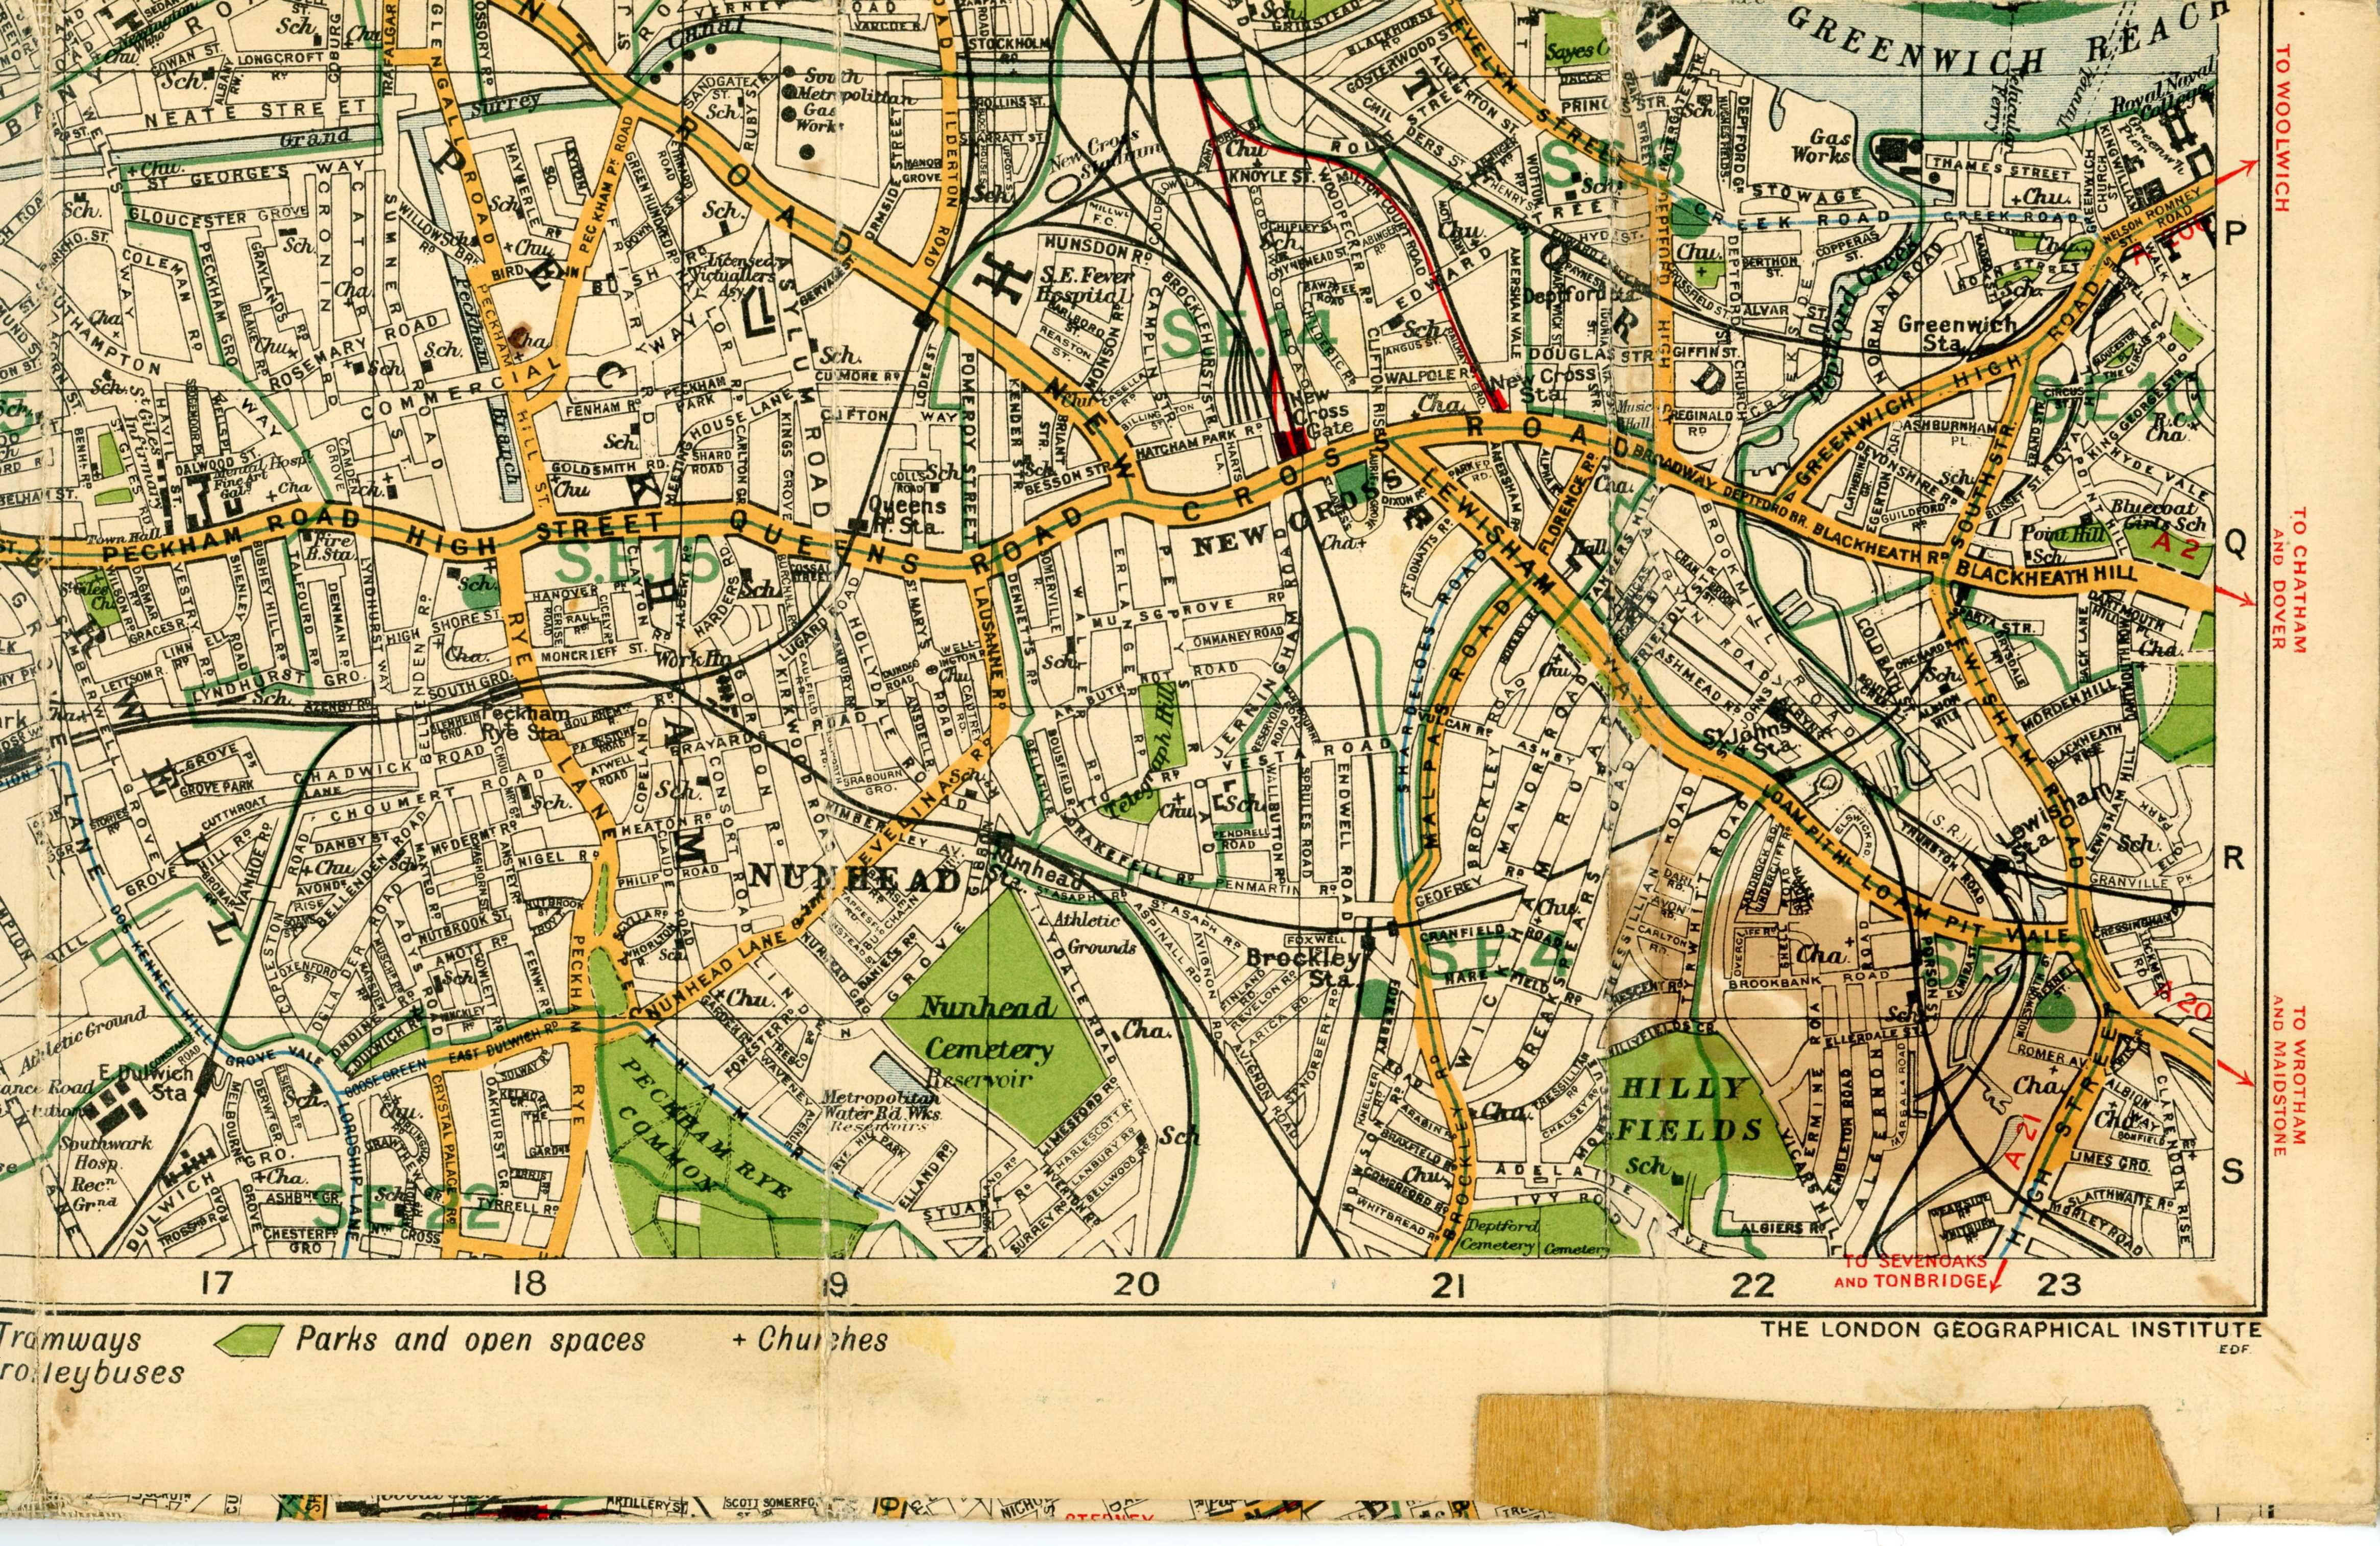 Mapa - plan Londynu z 1930 roku autorstwa George Philip and Sons.